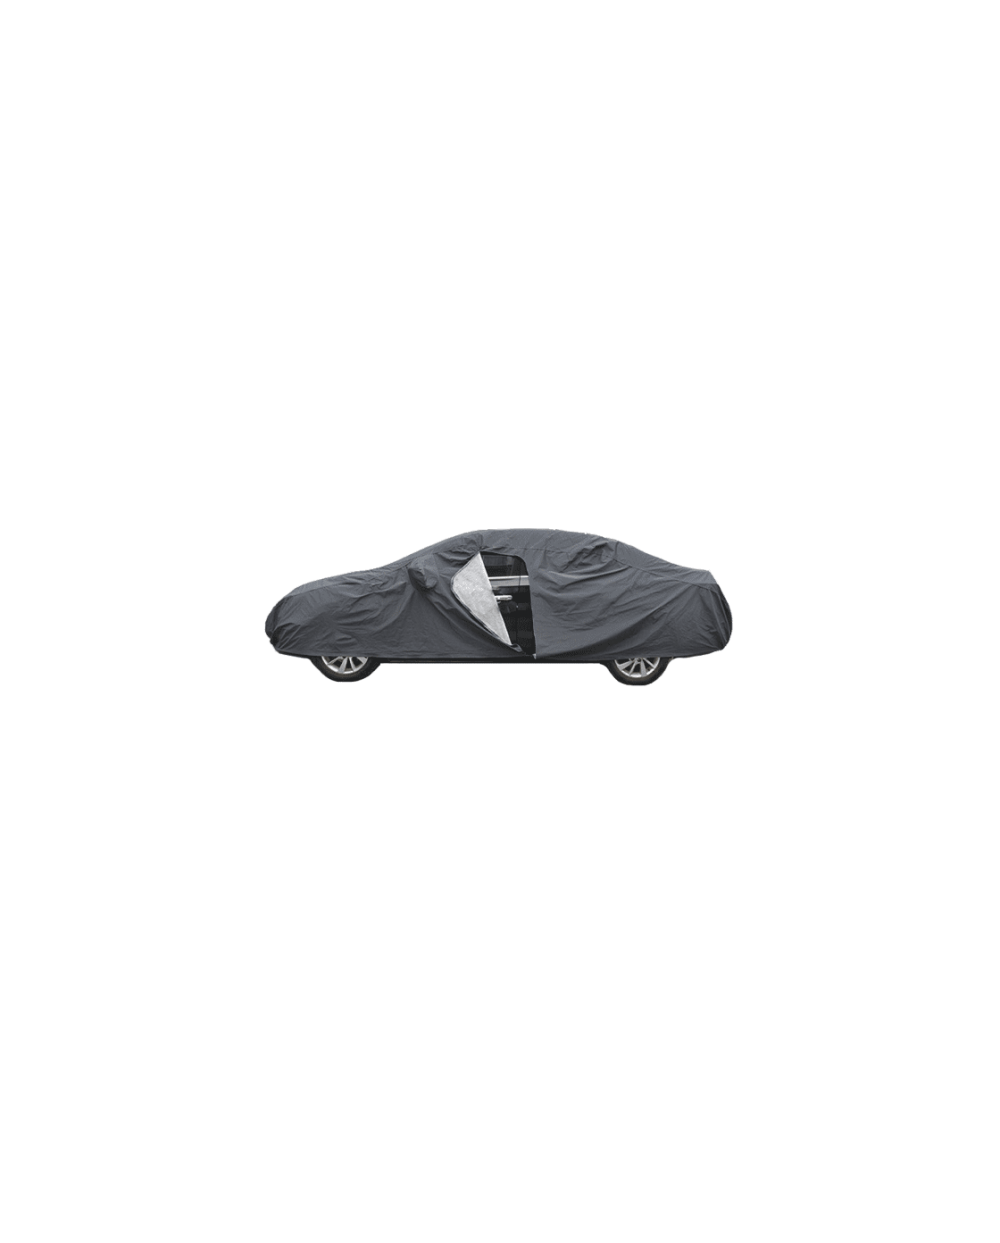 Κουκούλα Αυτοκινήτου Αδιάβροχη με Φερμουάρ στη Πόρτα Car Cover 560x205x120cm PAOLO 06115 - XXL